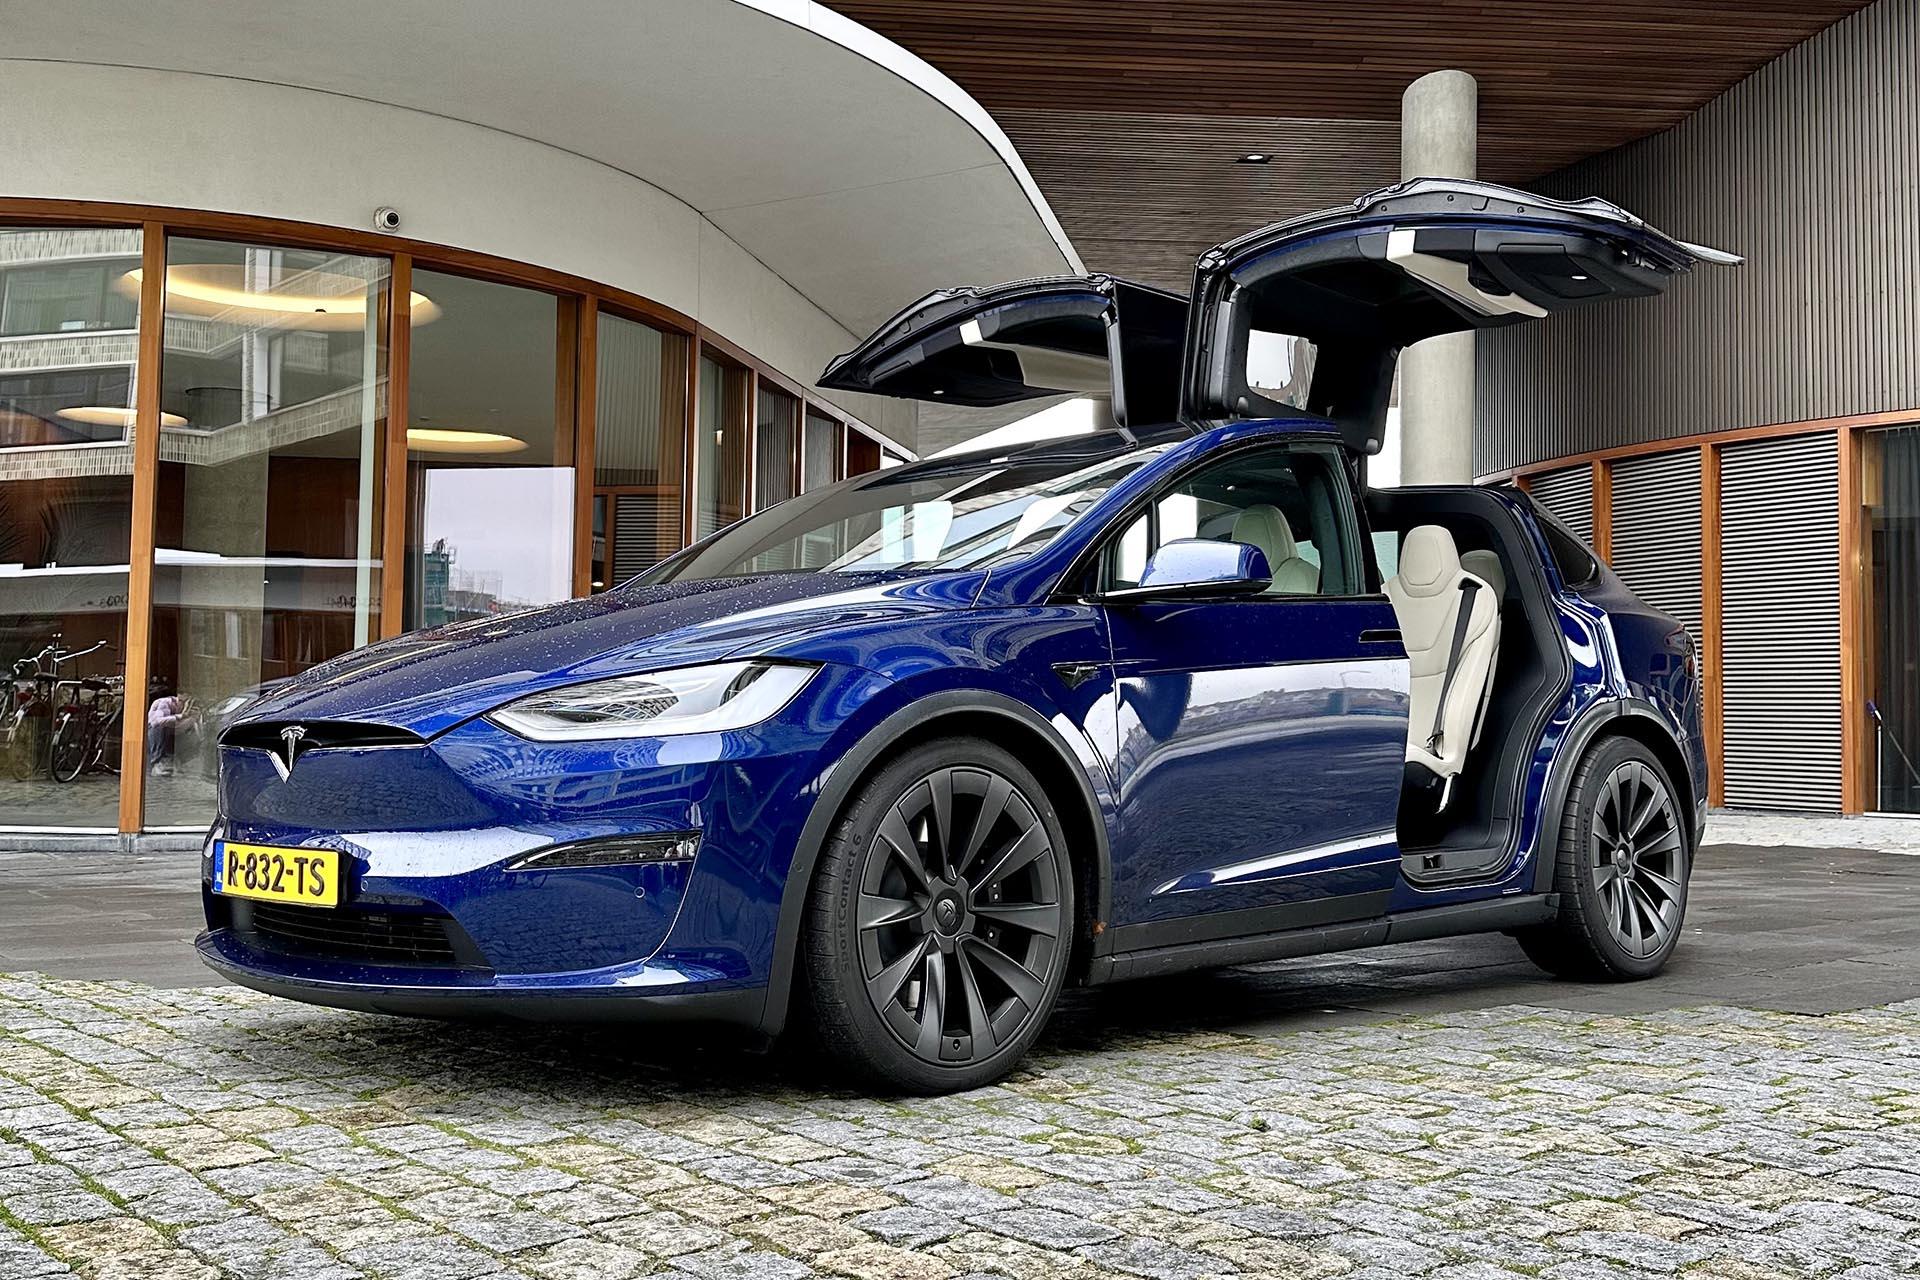 zwaarlijvigheid genie Omhoog Tesla Model X Plaid review (2023): Complaid gestoord - TopGear